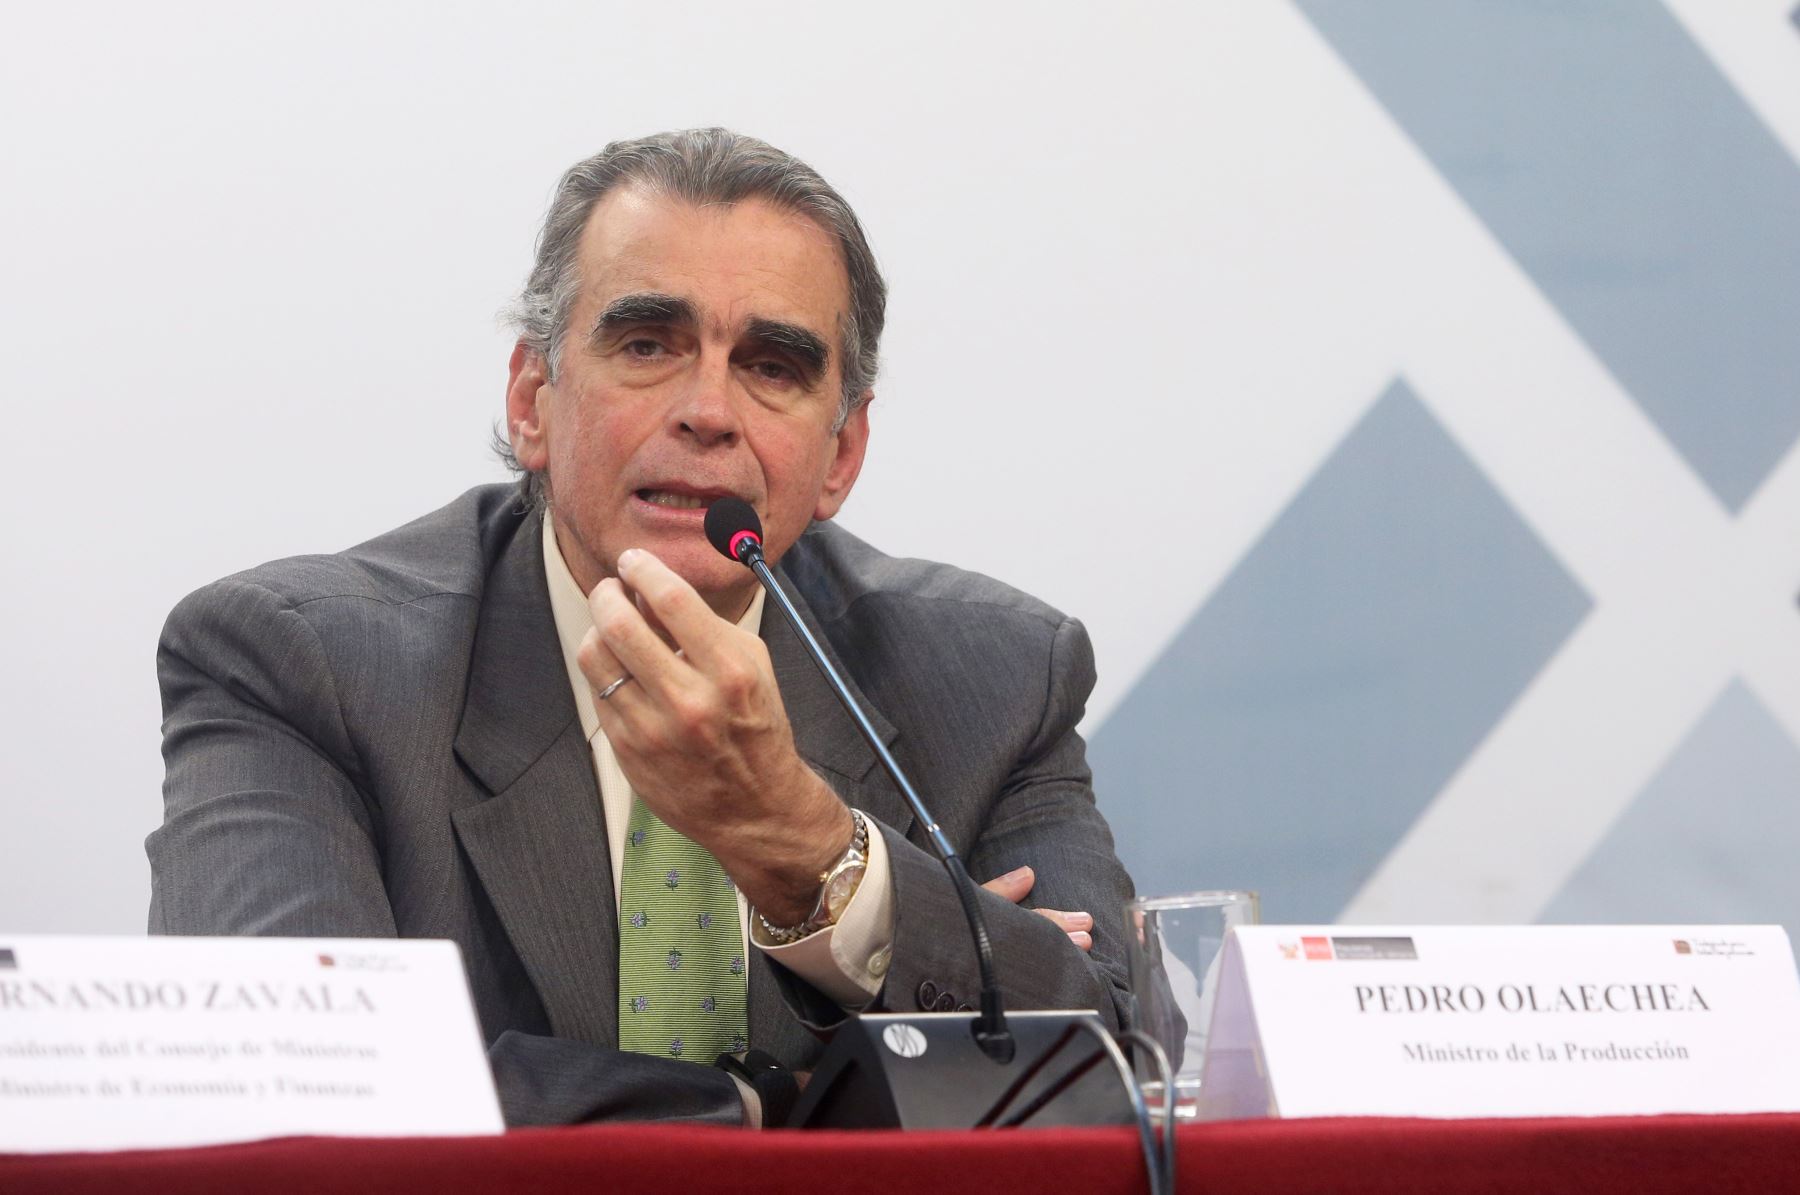 Ministro de la Producción, Pedro Olaechea. ANDINA/Jhony Laurente